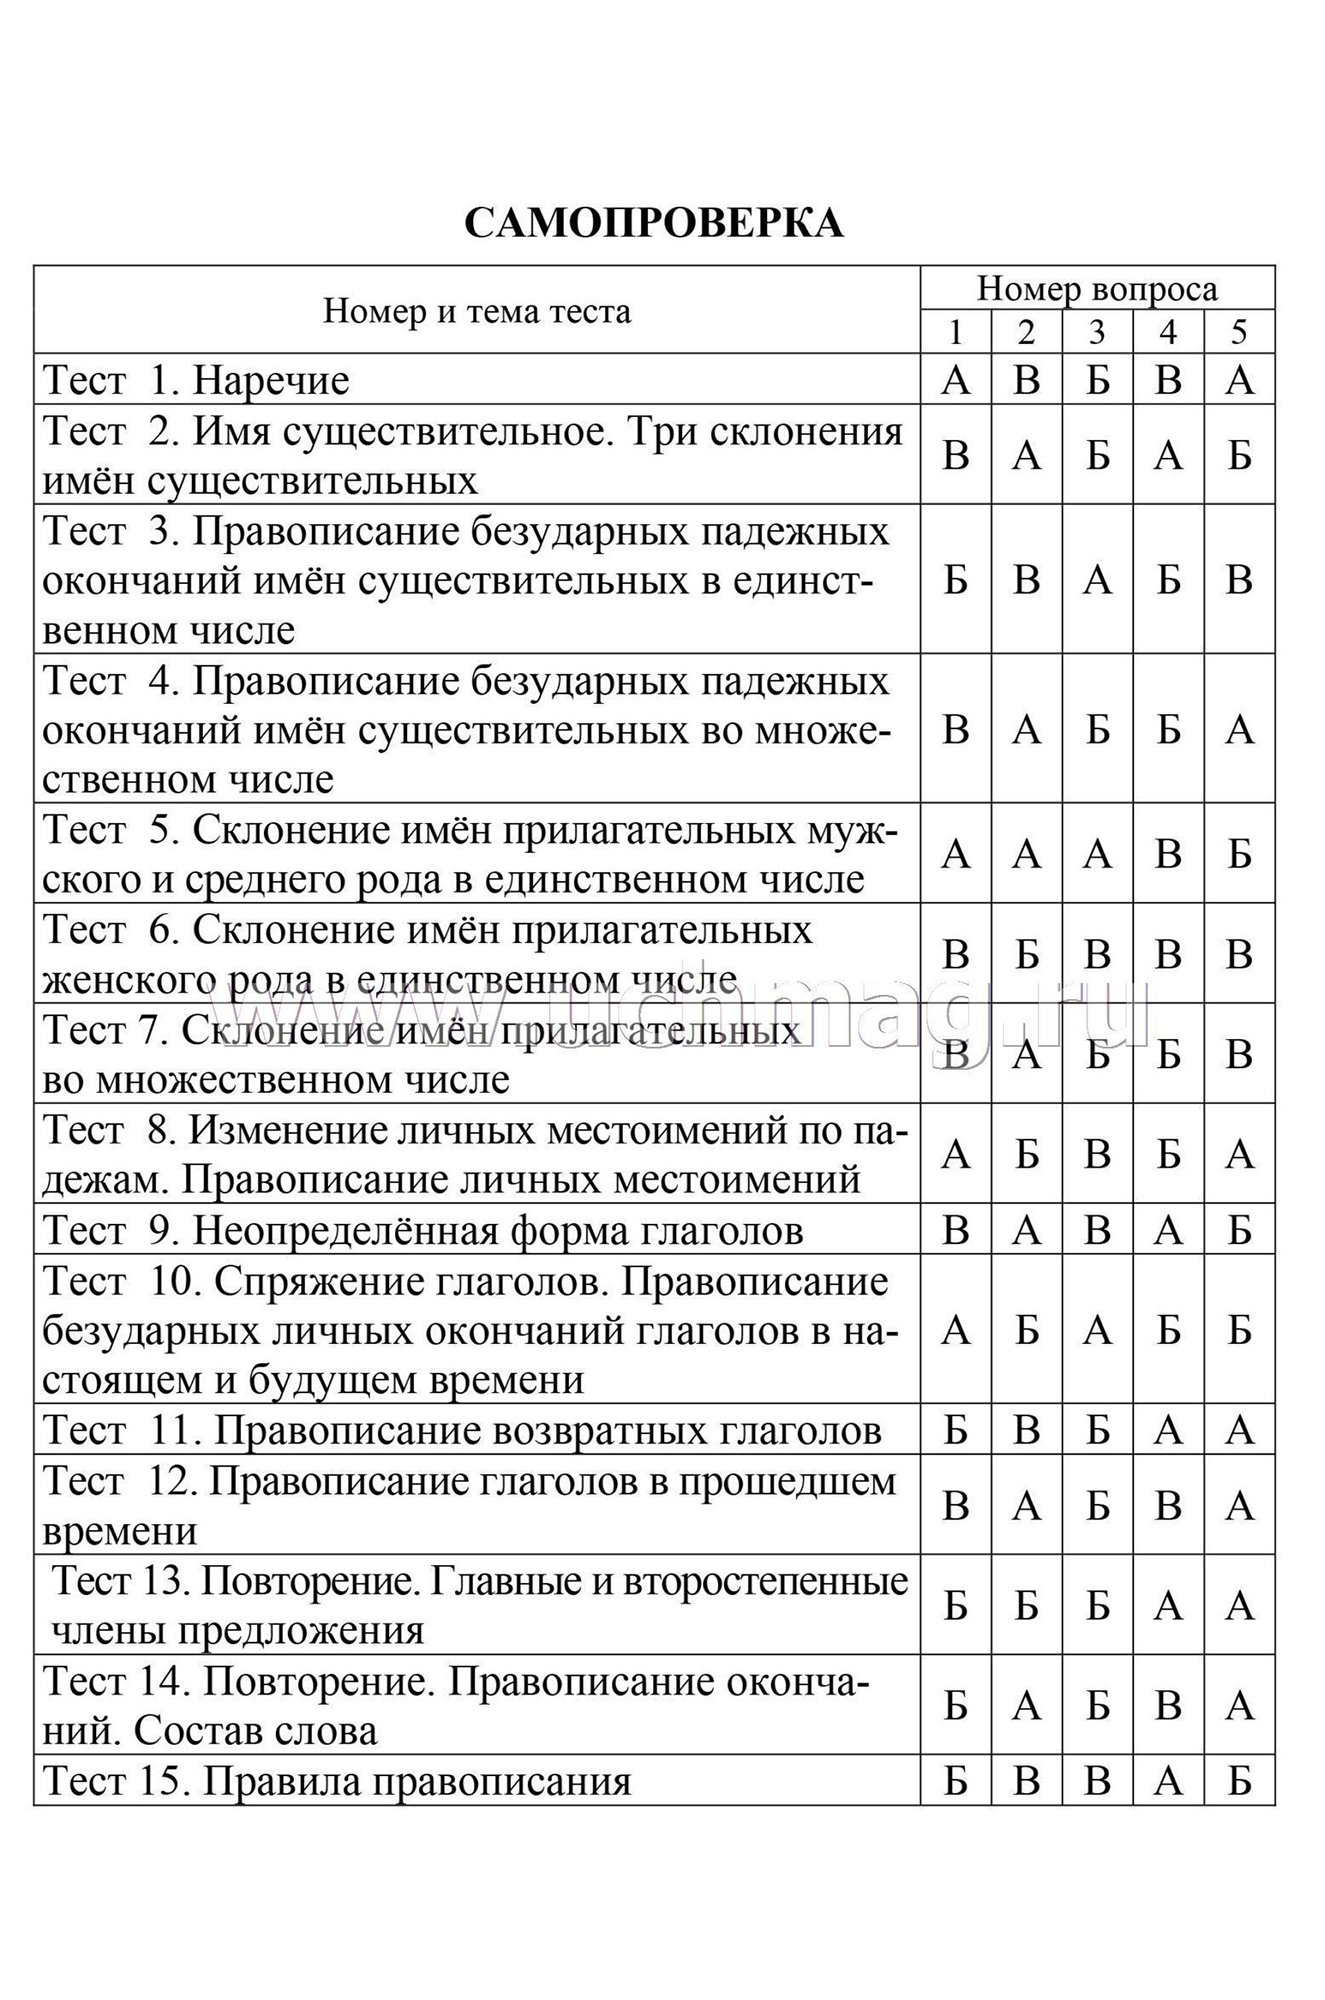 Набор тестов по русскому языку, математике 4 класс 4 шт. Издательство Учитель